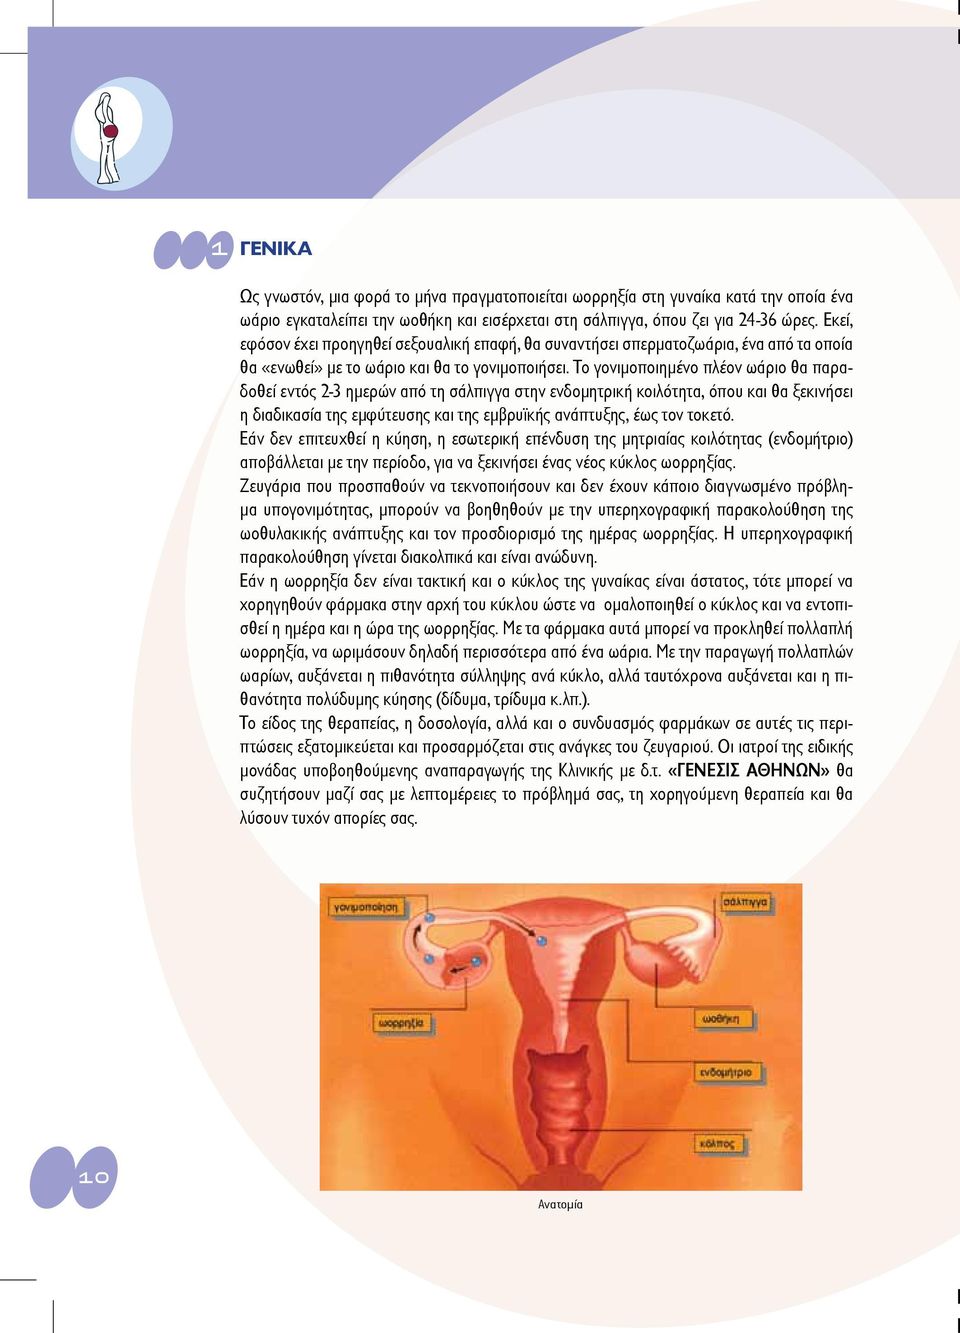 Το γονιμοποιημένο πλέον ωάριο θα παραδοθεί εντός 2-3 ημερών από τη σάλπιγγα στην ενδομητρική κοιλότητα, όπου και θα ξεκινήσει η διαδικασία της εμφύτευσης και της εμβρυϊκής ανάπτυξης, έως τον τοκετό.